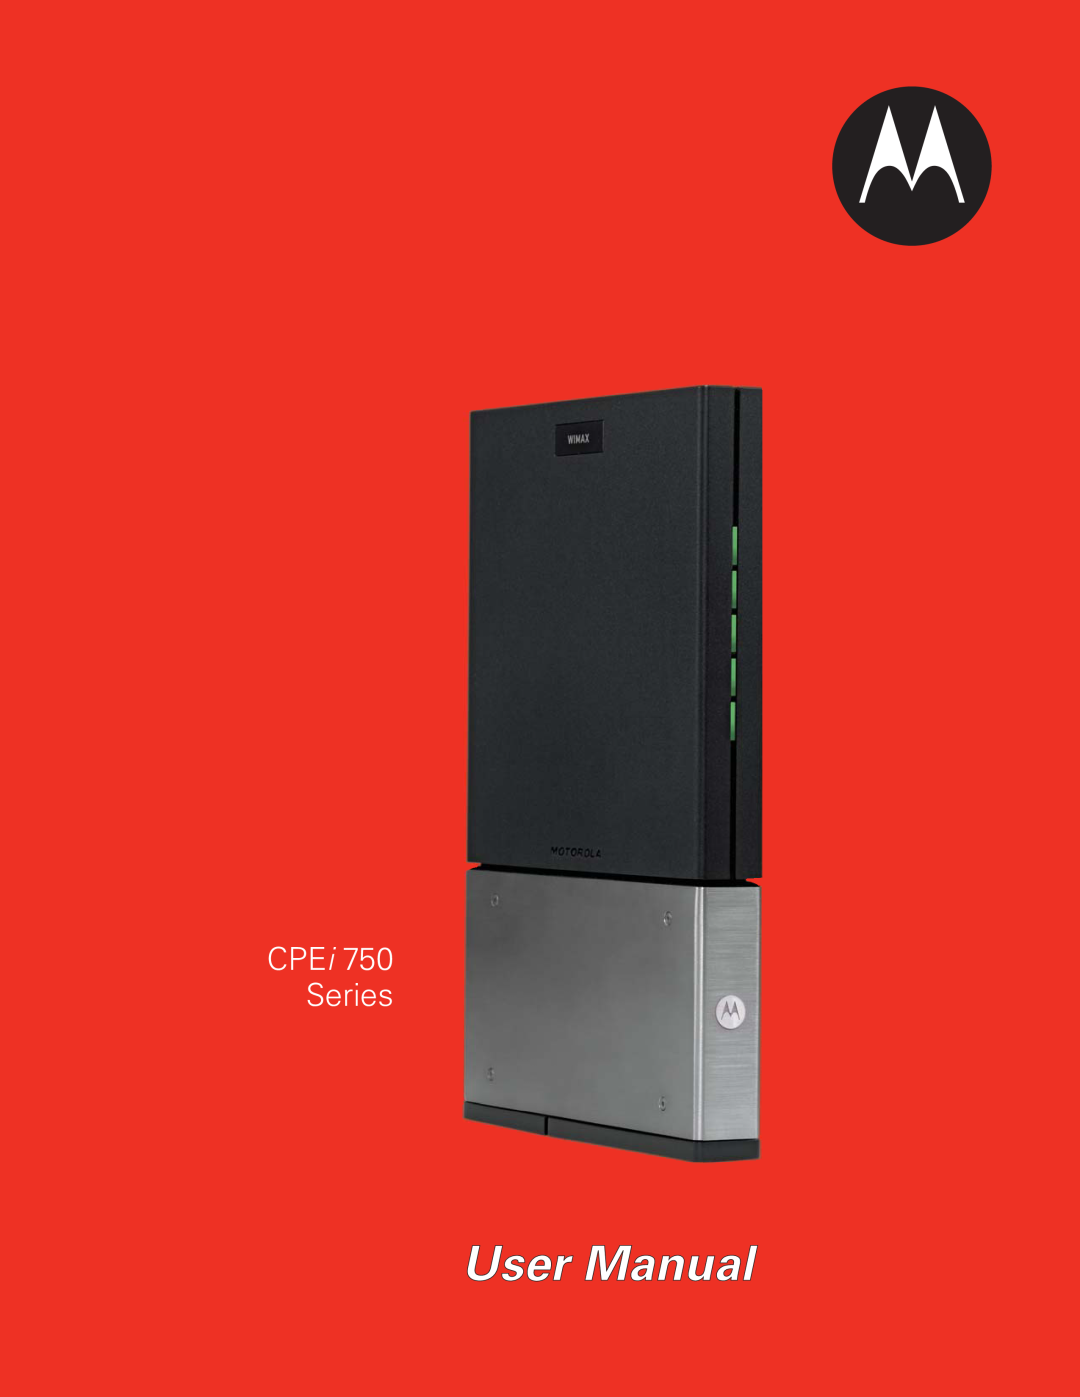 Motorola CPEI 750 manual User Manual, CPEi 750 Series 